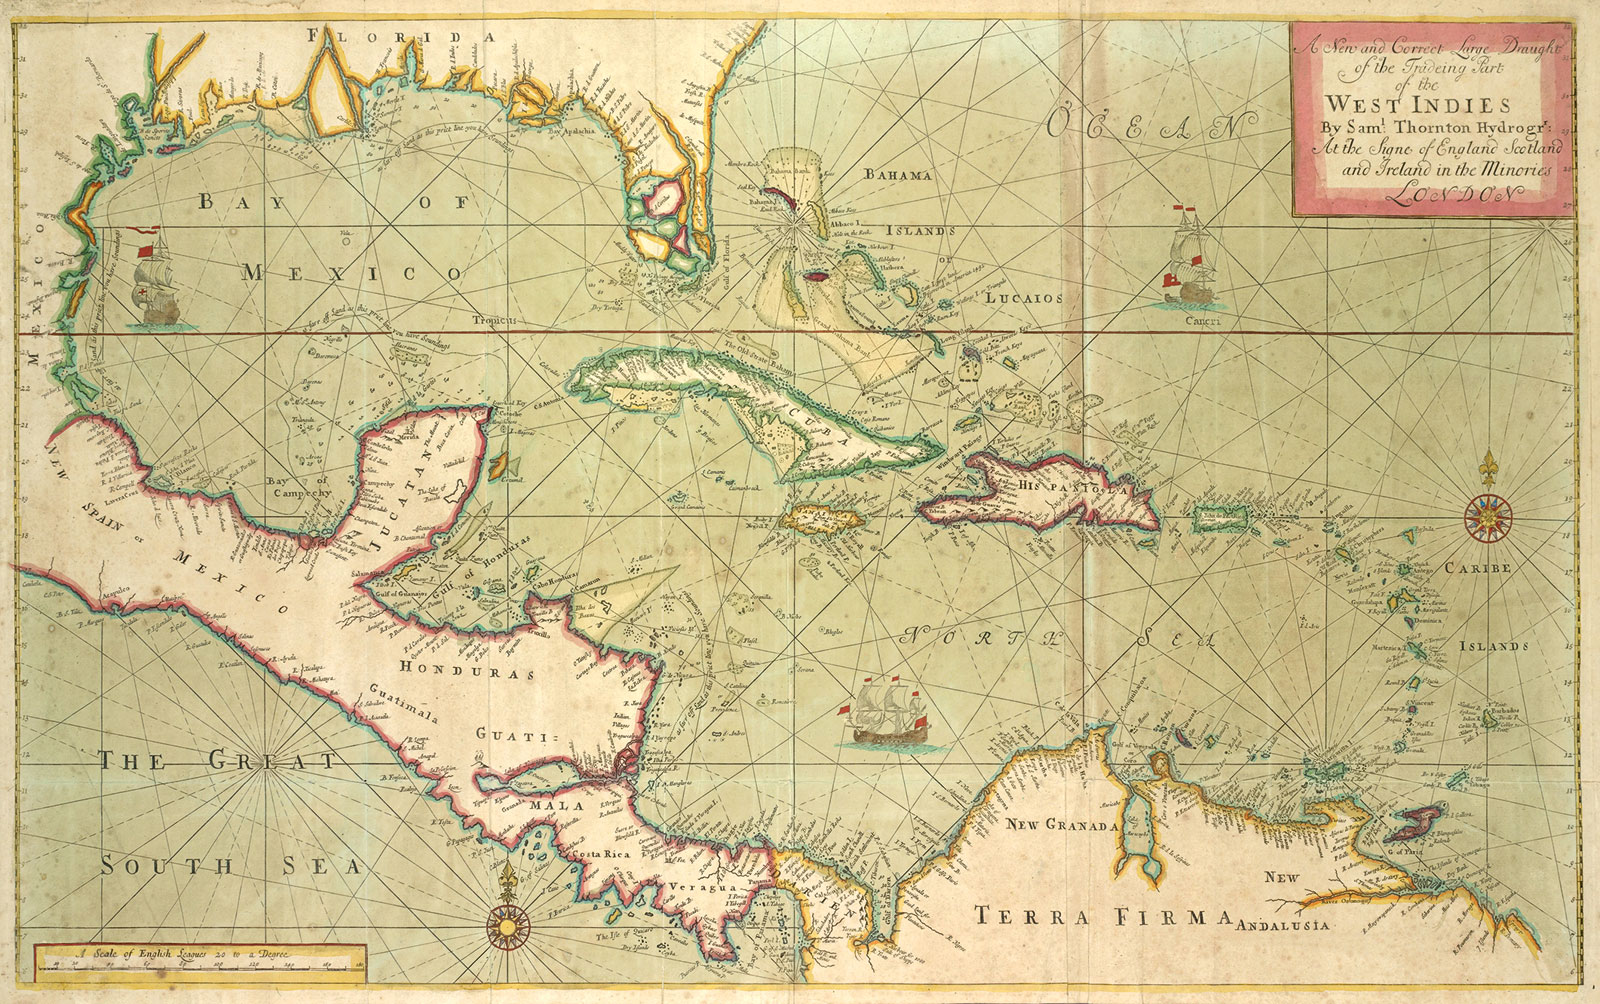 Samuel Thornton, *Borrador nuevo y correcto de la parte comercial de Las Antillas*, 1702-1707. The New York Public Library 